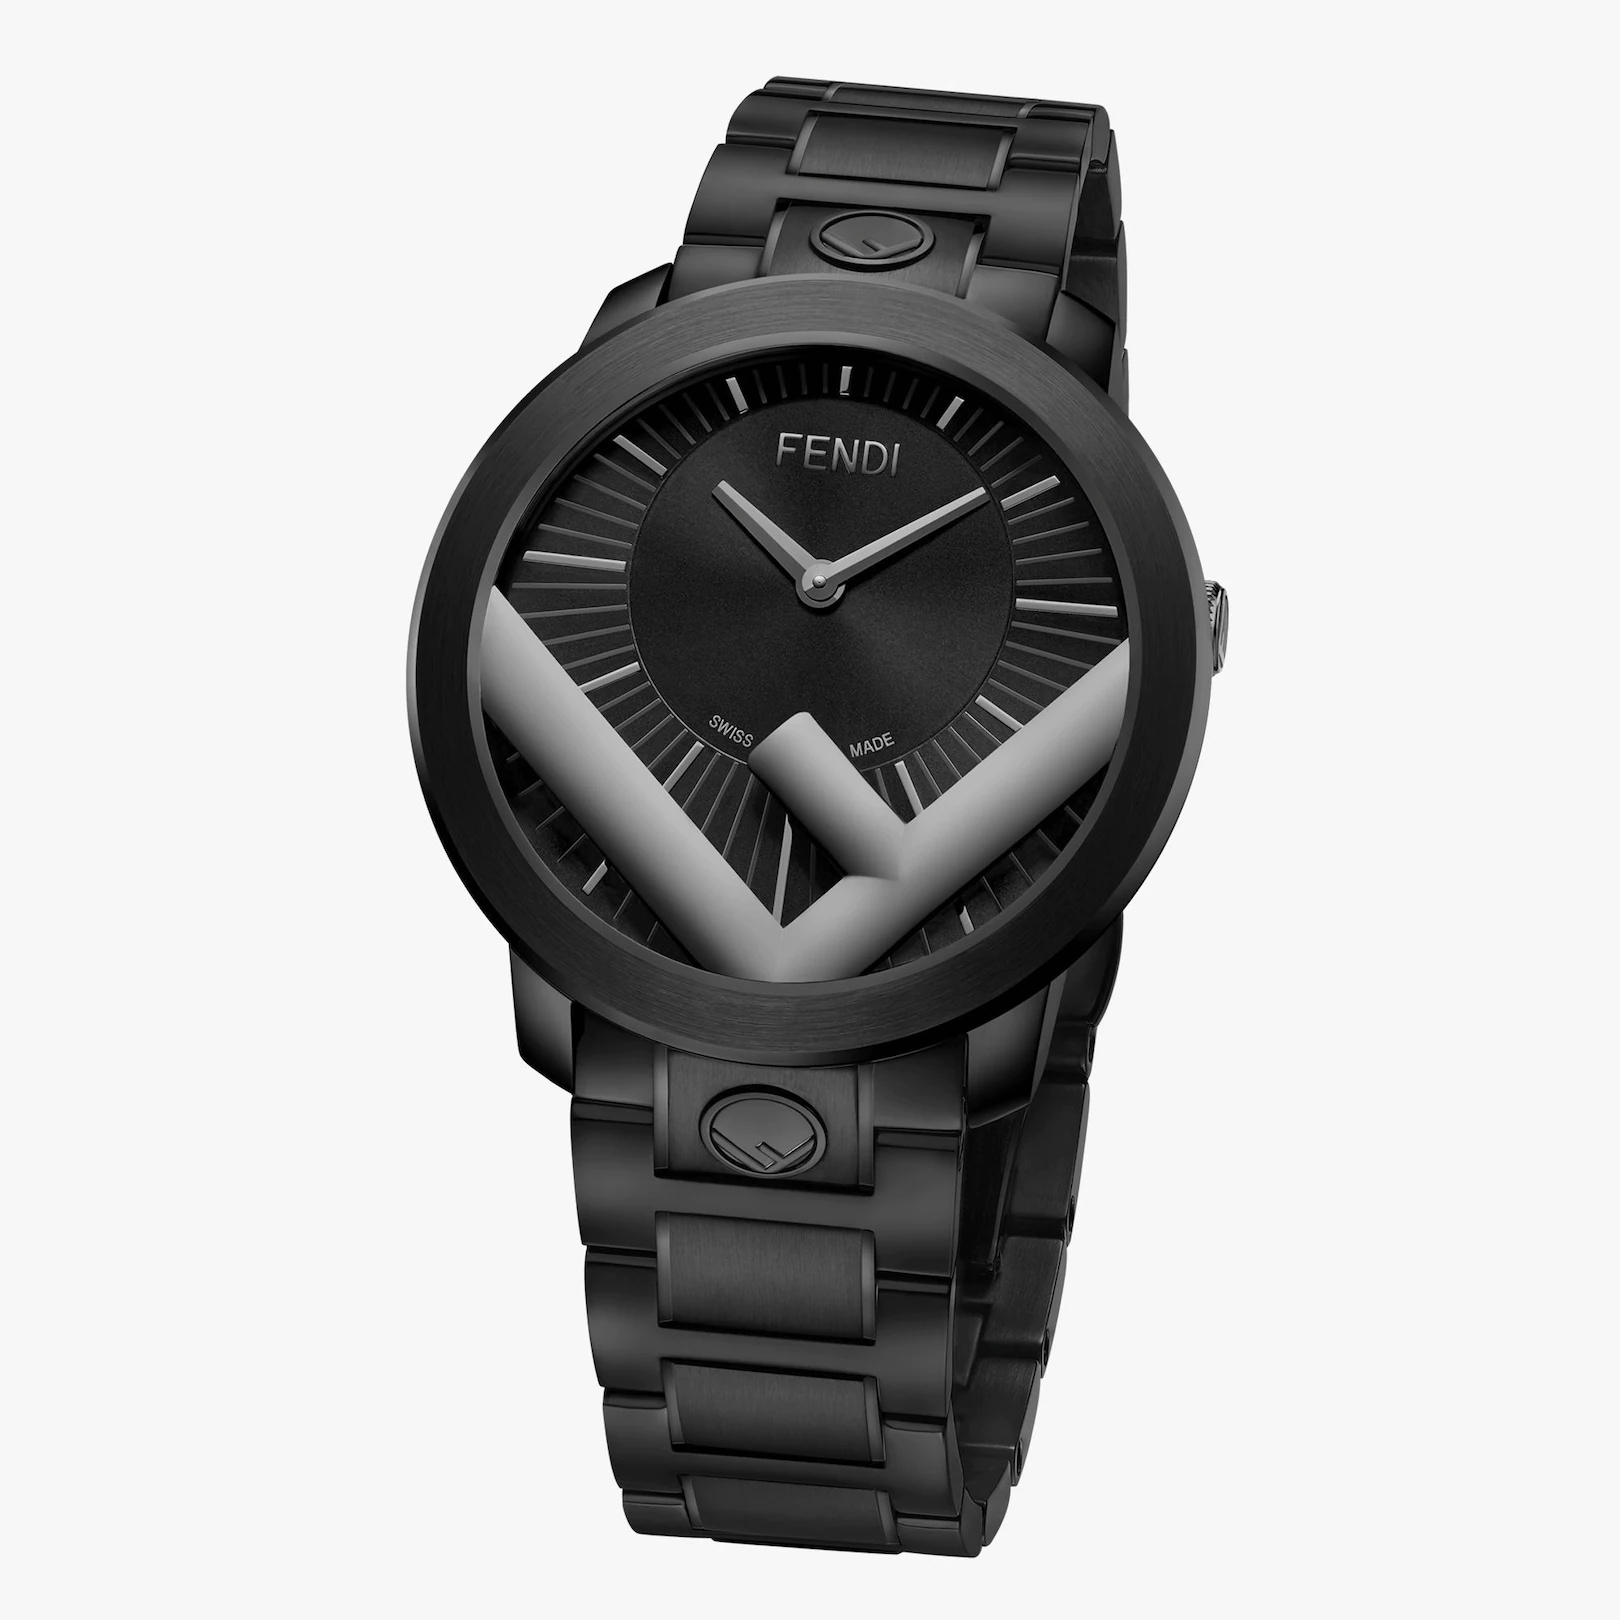 41 mm (1.6 inch) - Watch with F is Fendi logo - 2